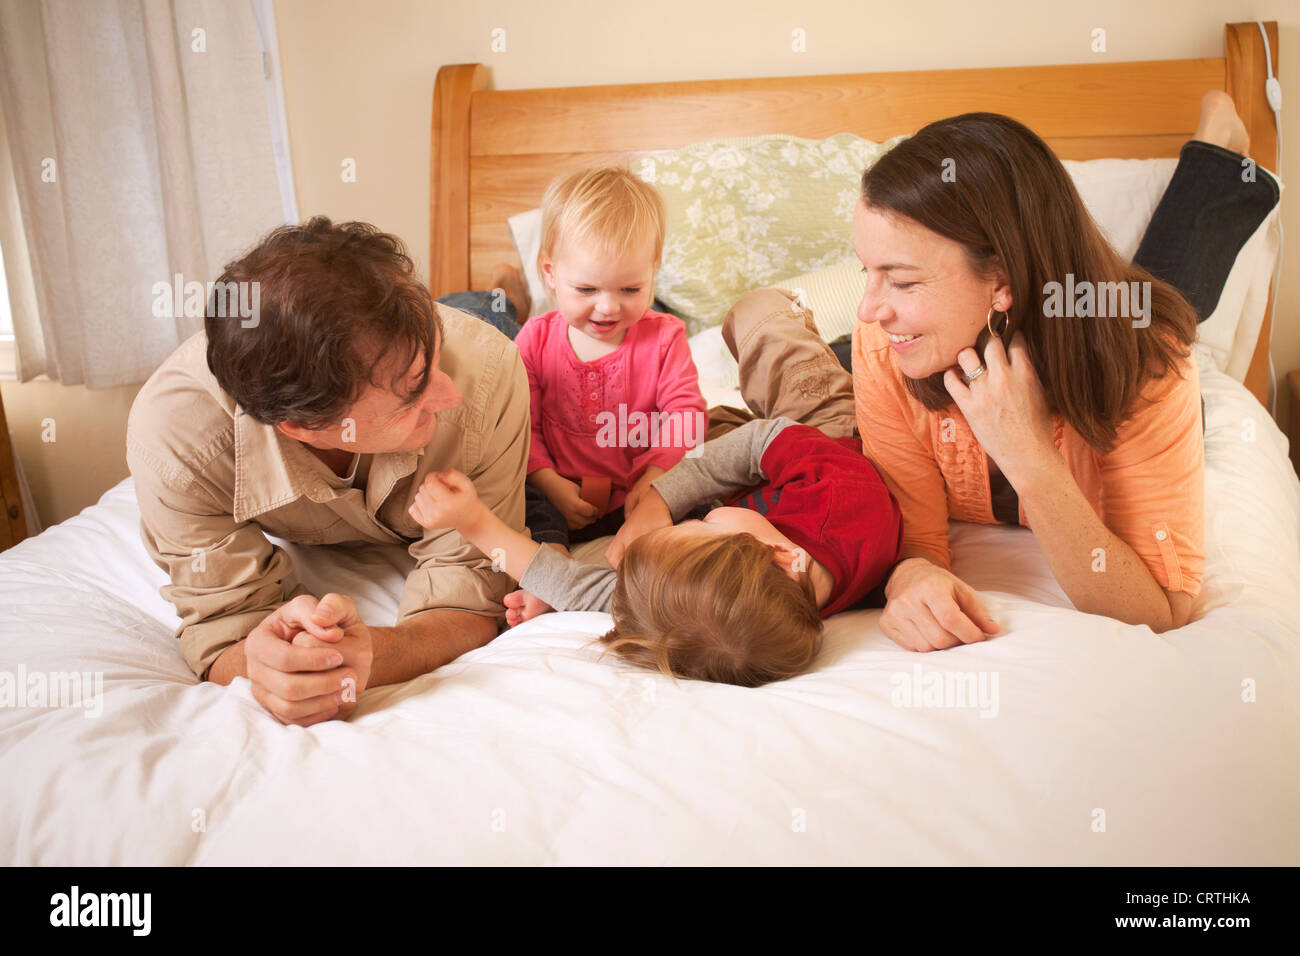 La mère, le père et ses deux enfants sont couchés sur le lit. Banque D'Images